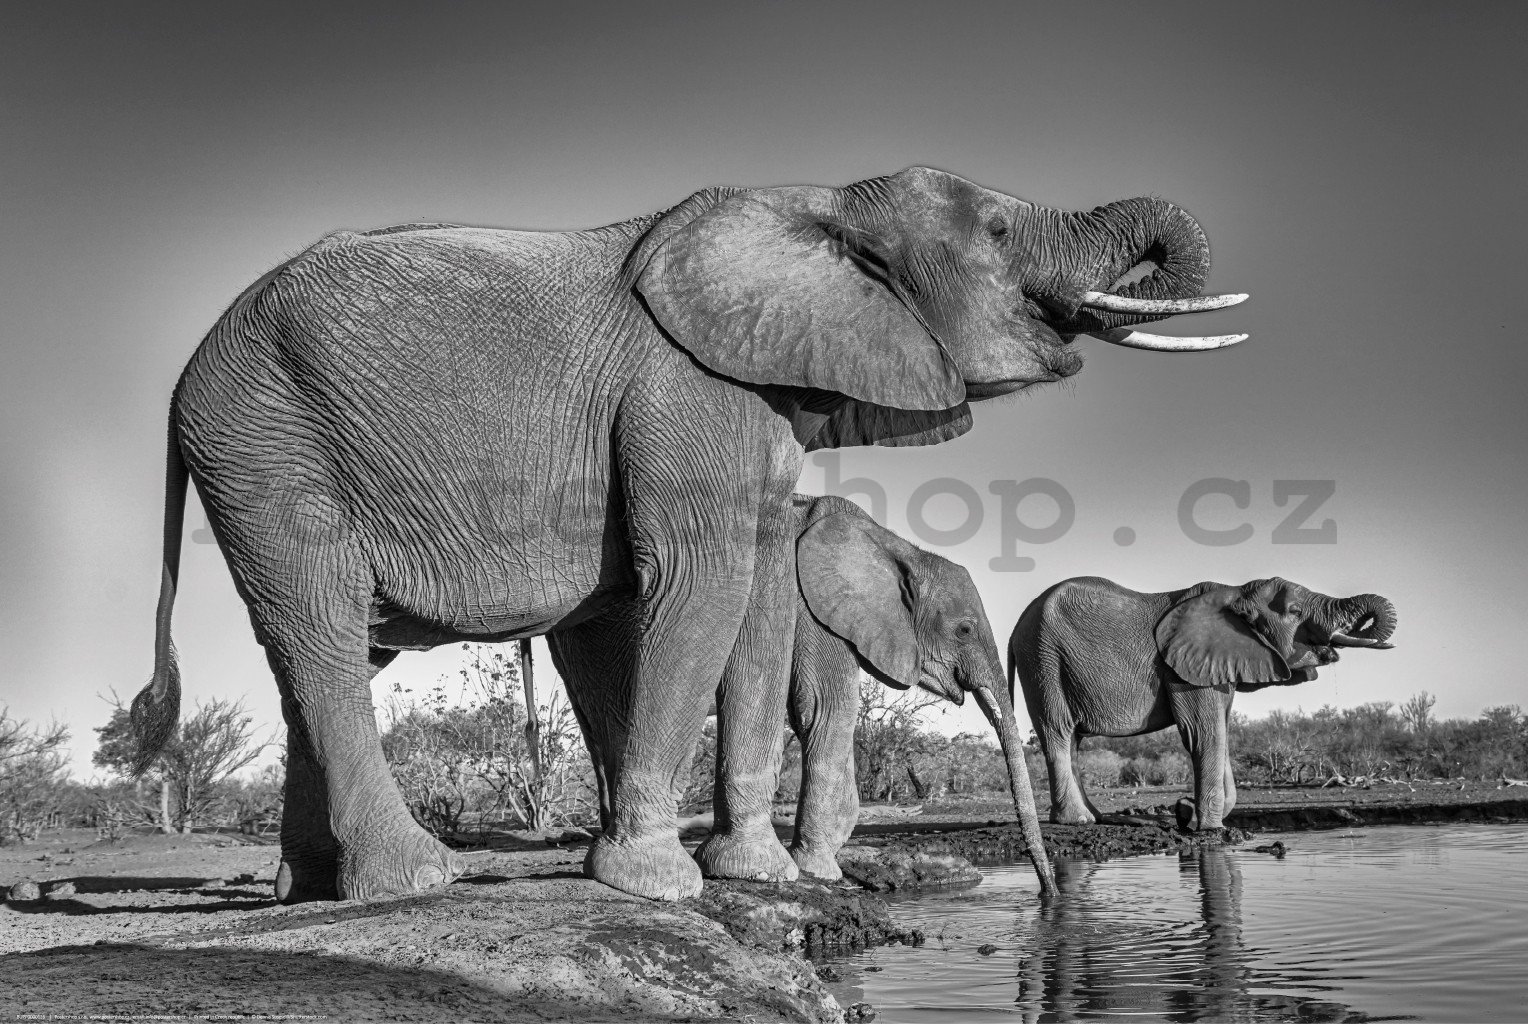 Plakát: Sloni u napajedla